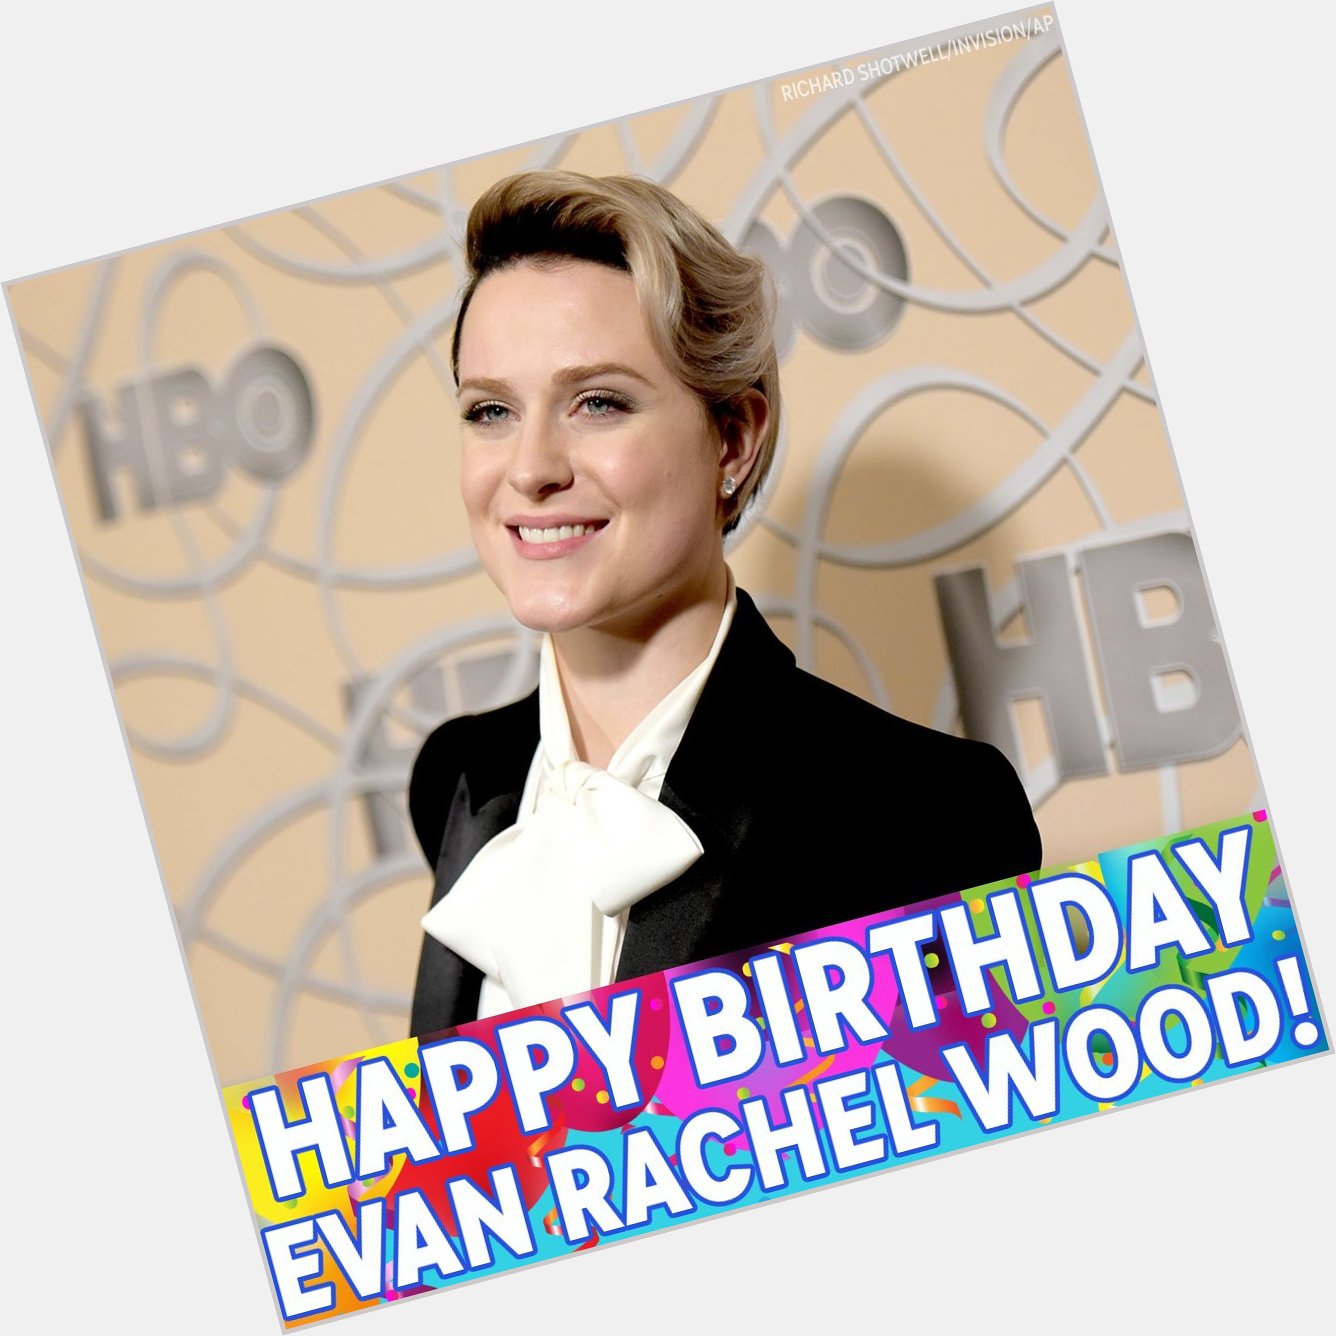 Happy Birthday, Evan Rachel Wood! 